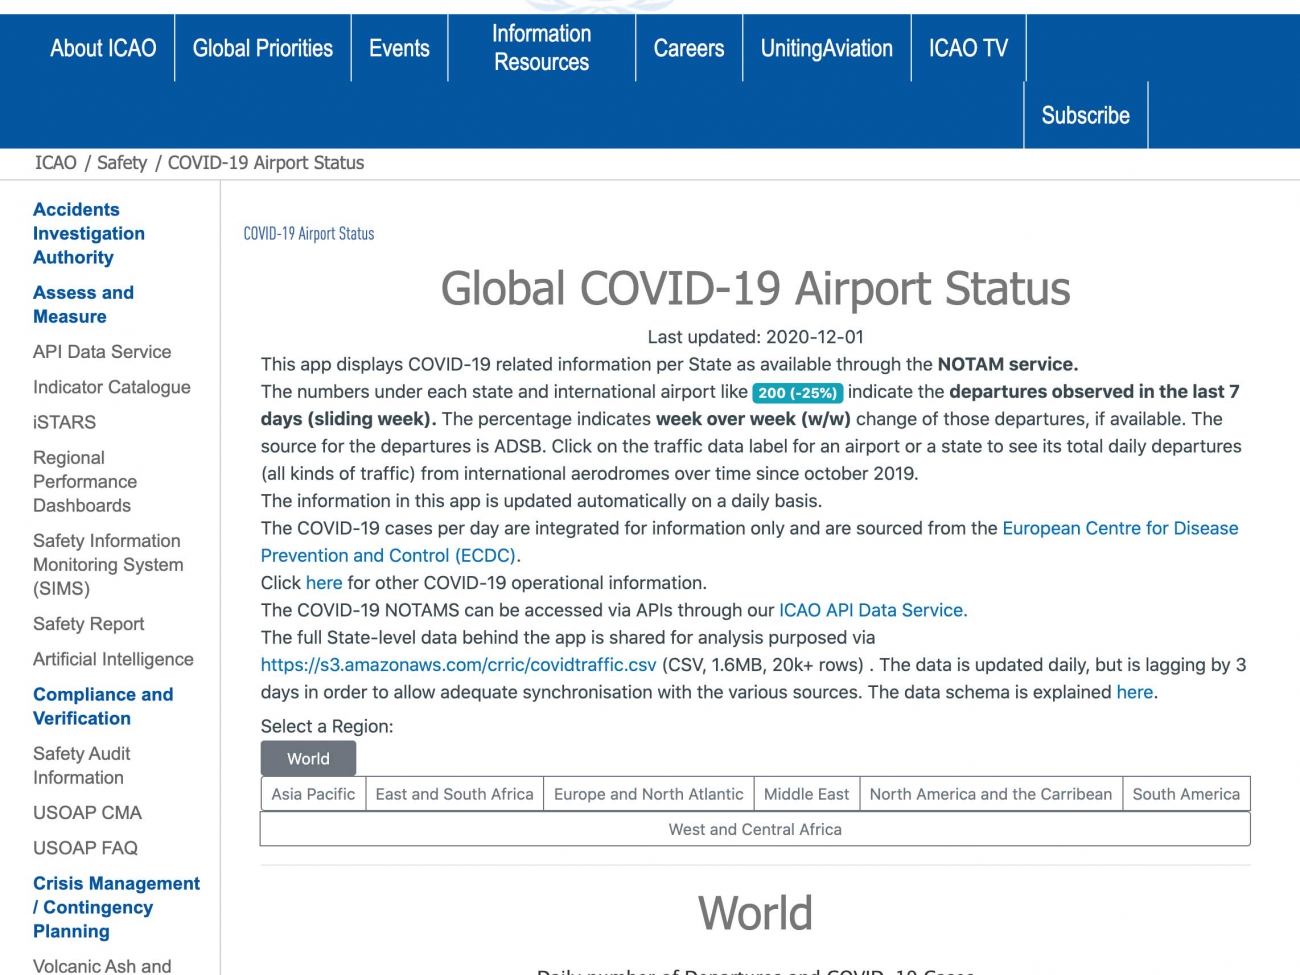 Global-Covid-19-Airport-Status